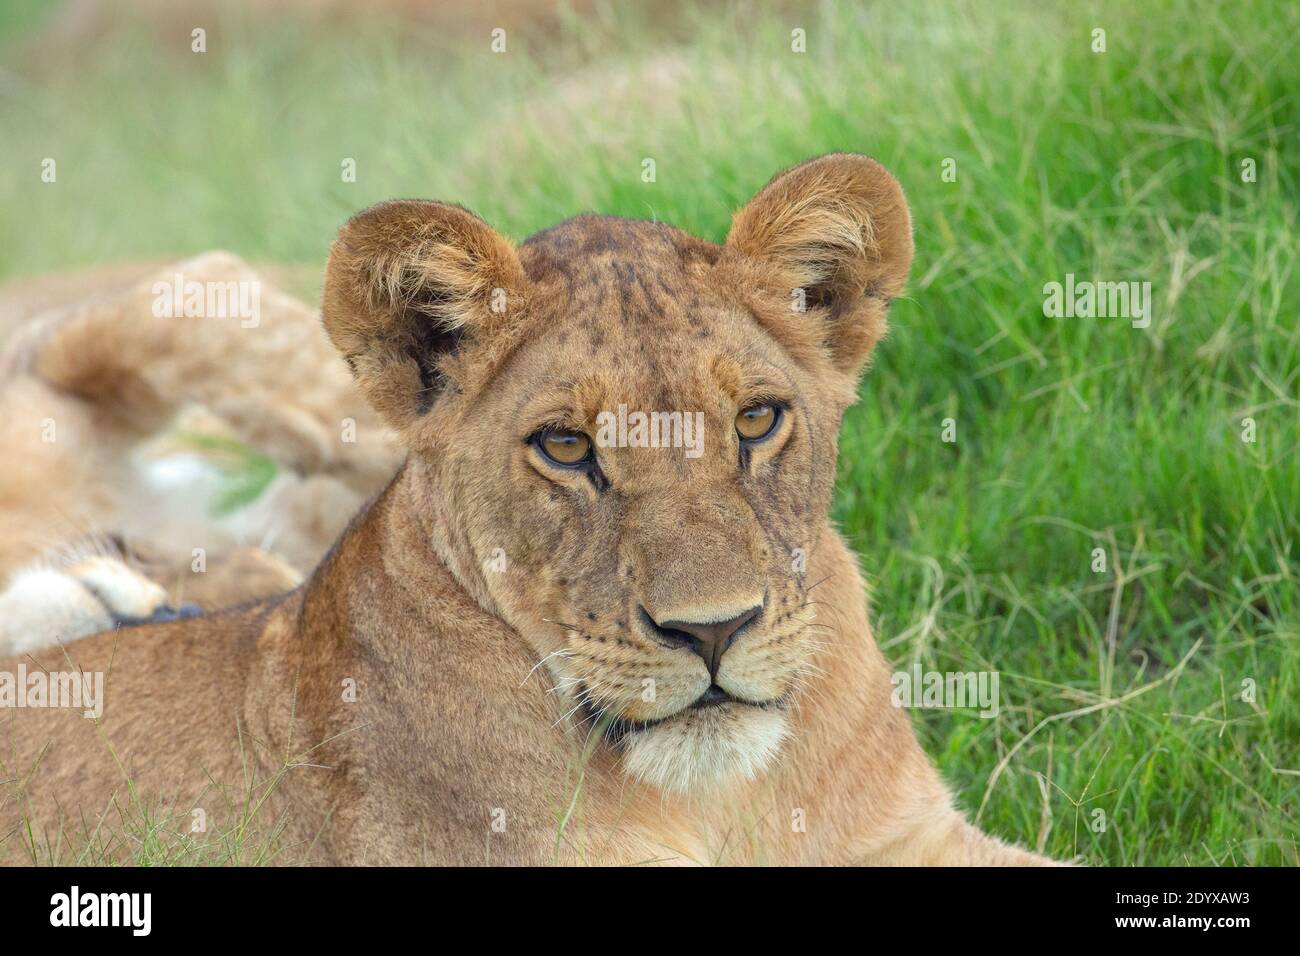 Leona africana (Panthera lio), detalle de cabeza, rasgos faciales. Contacto visual total. Comparativamente orejas grandes indicativas de un animal más joven. Foto de stock